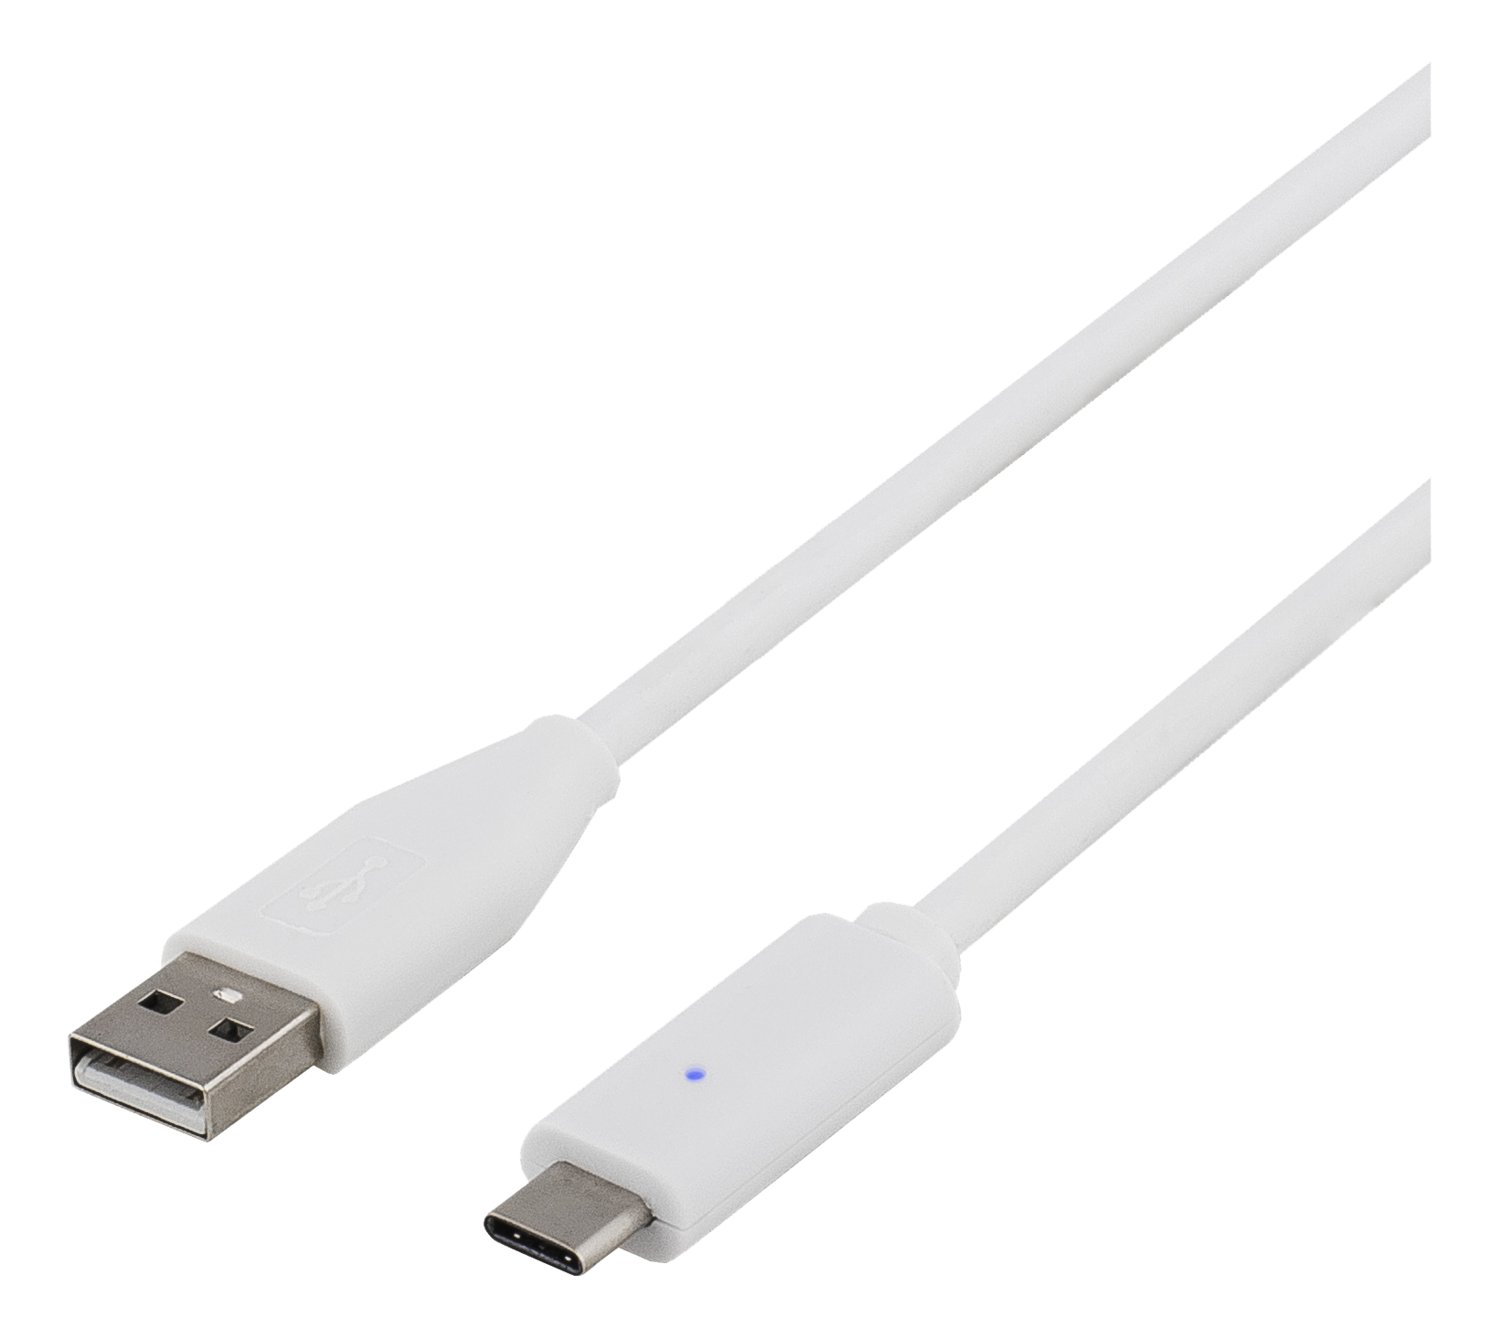 DELTACO USB 2.0 kabel, Typ C - Typ A ha, 1,5m, vit